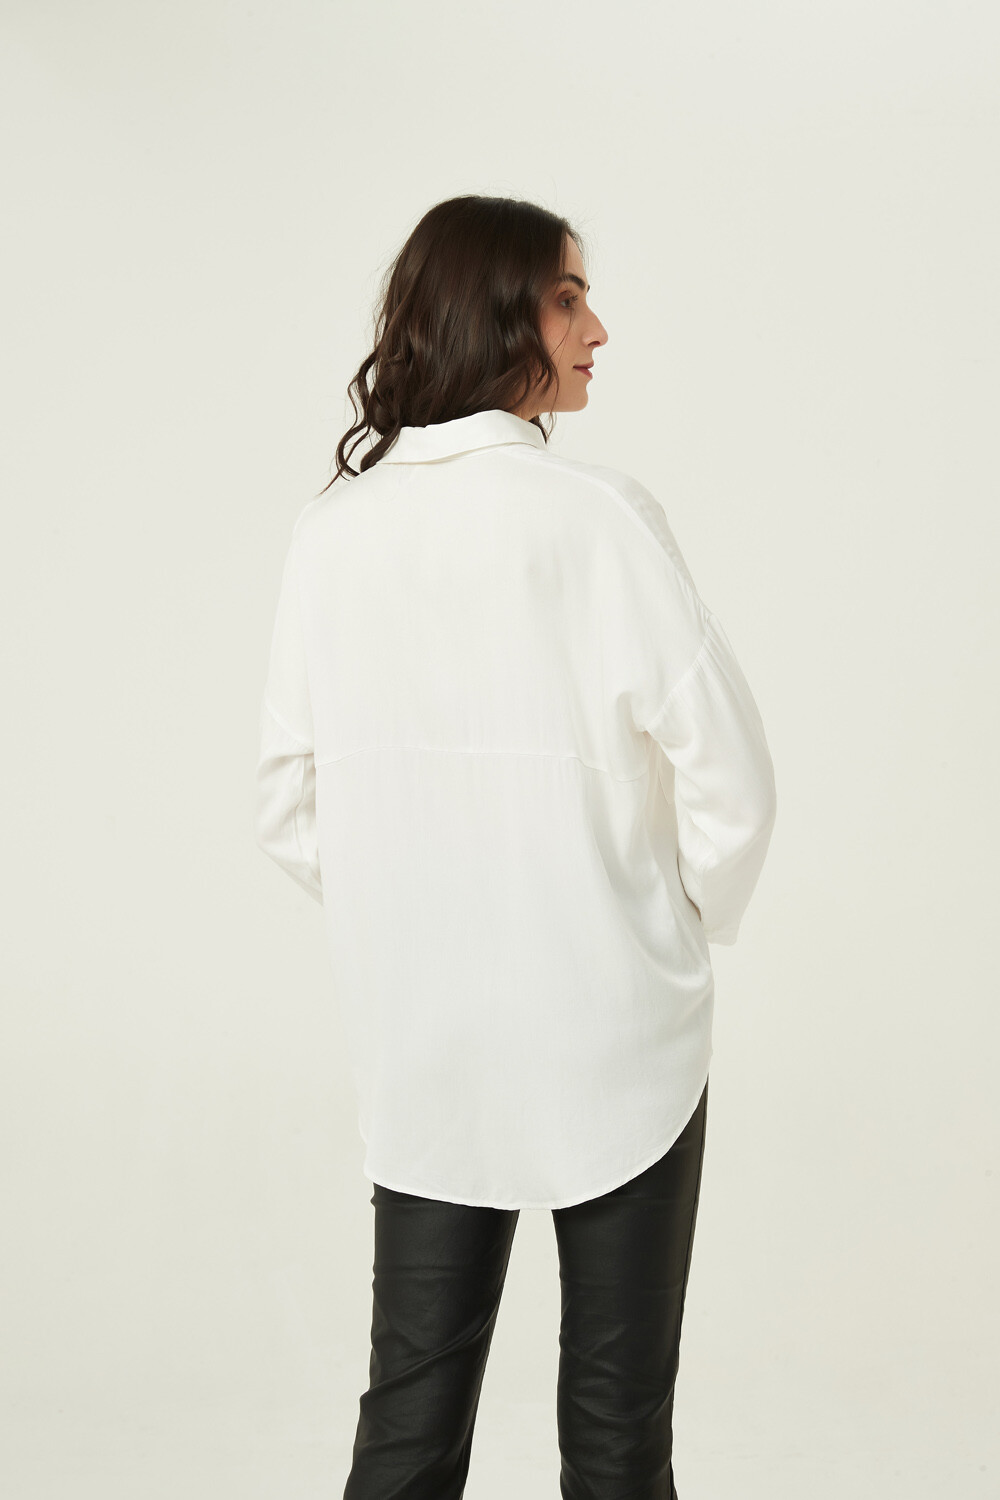 Camisa Iowa Marfil / Off White